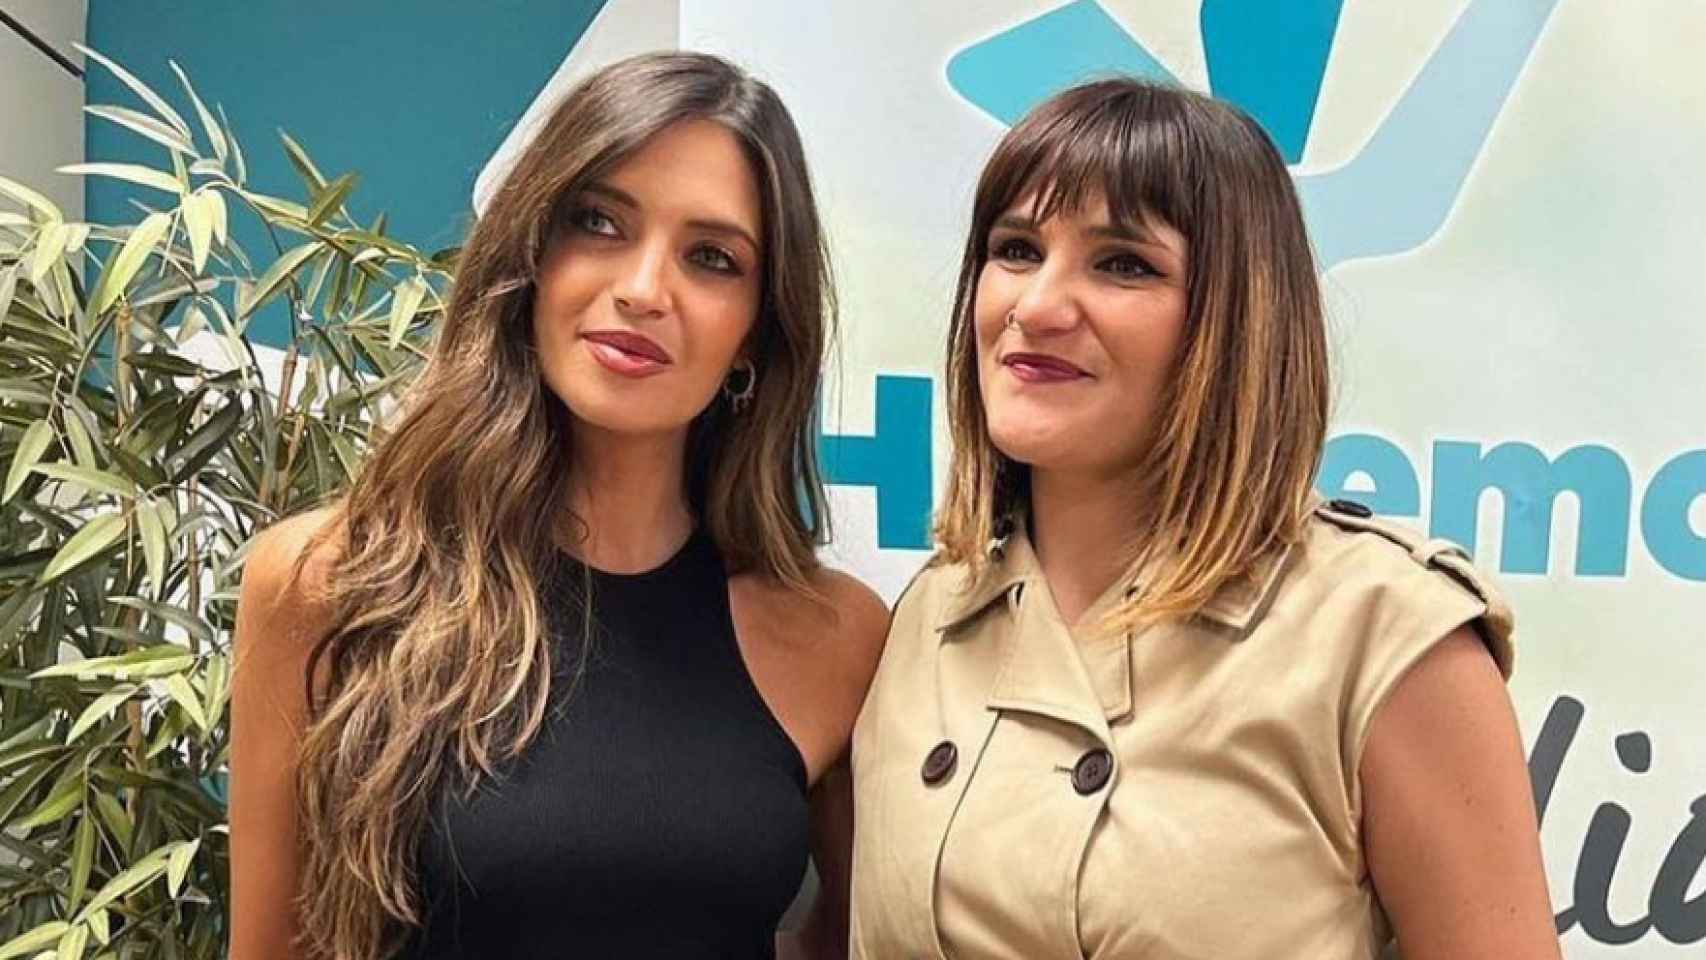 Sara Carbonero y María Rozalén. Foto: Instagram @saracarbonero.